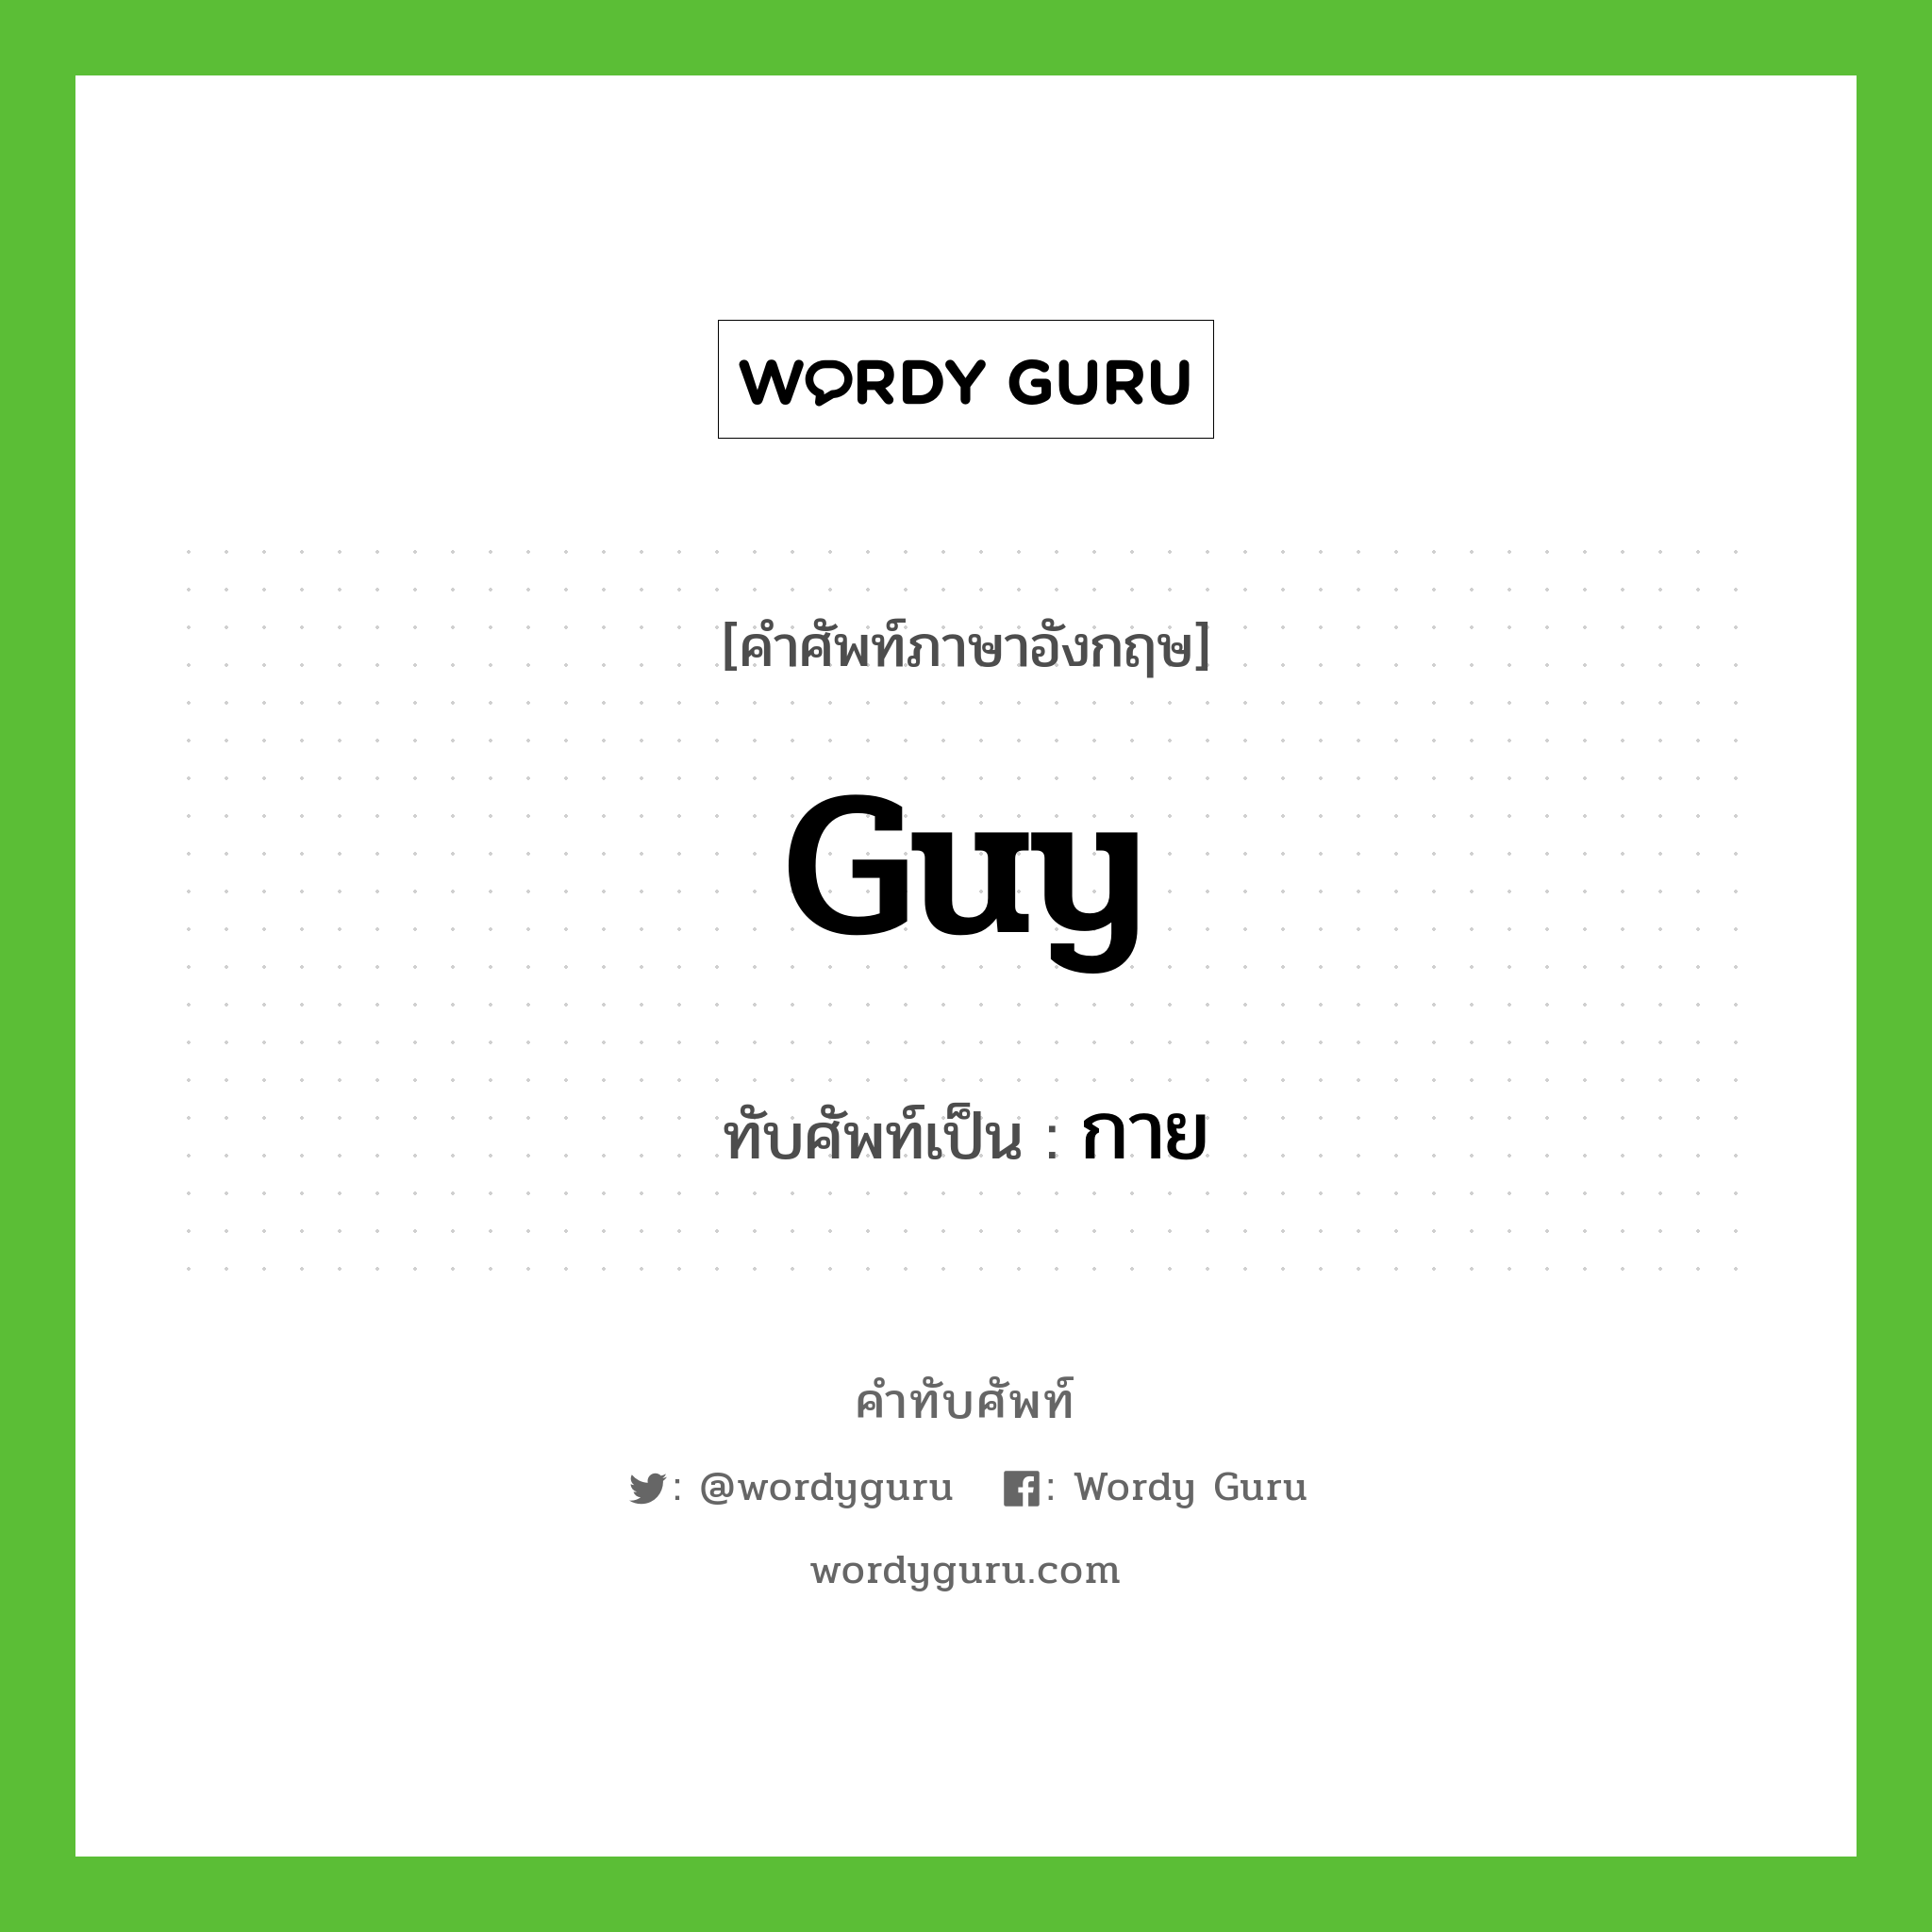 Guy เขียนเป็นคำไทยว่าอะไร?, คำศัพท์ภาษาอังกฤษ Guy ทับศัพท์เป็น กาย